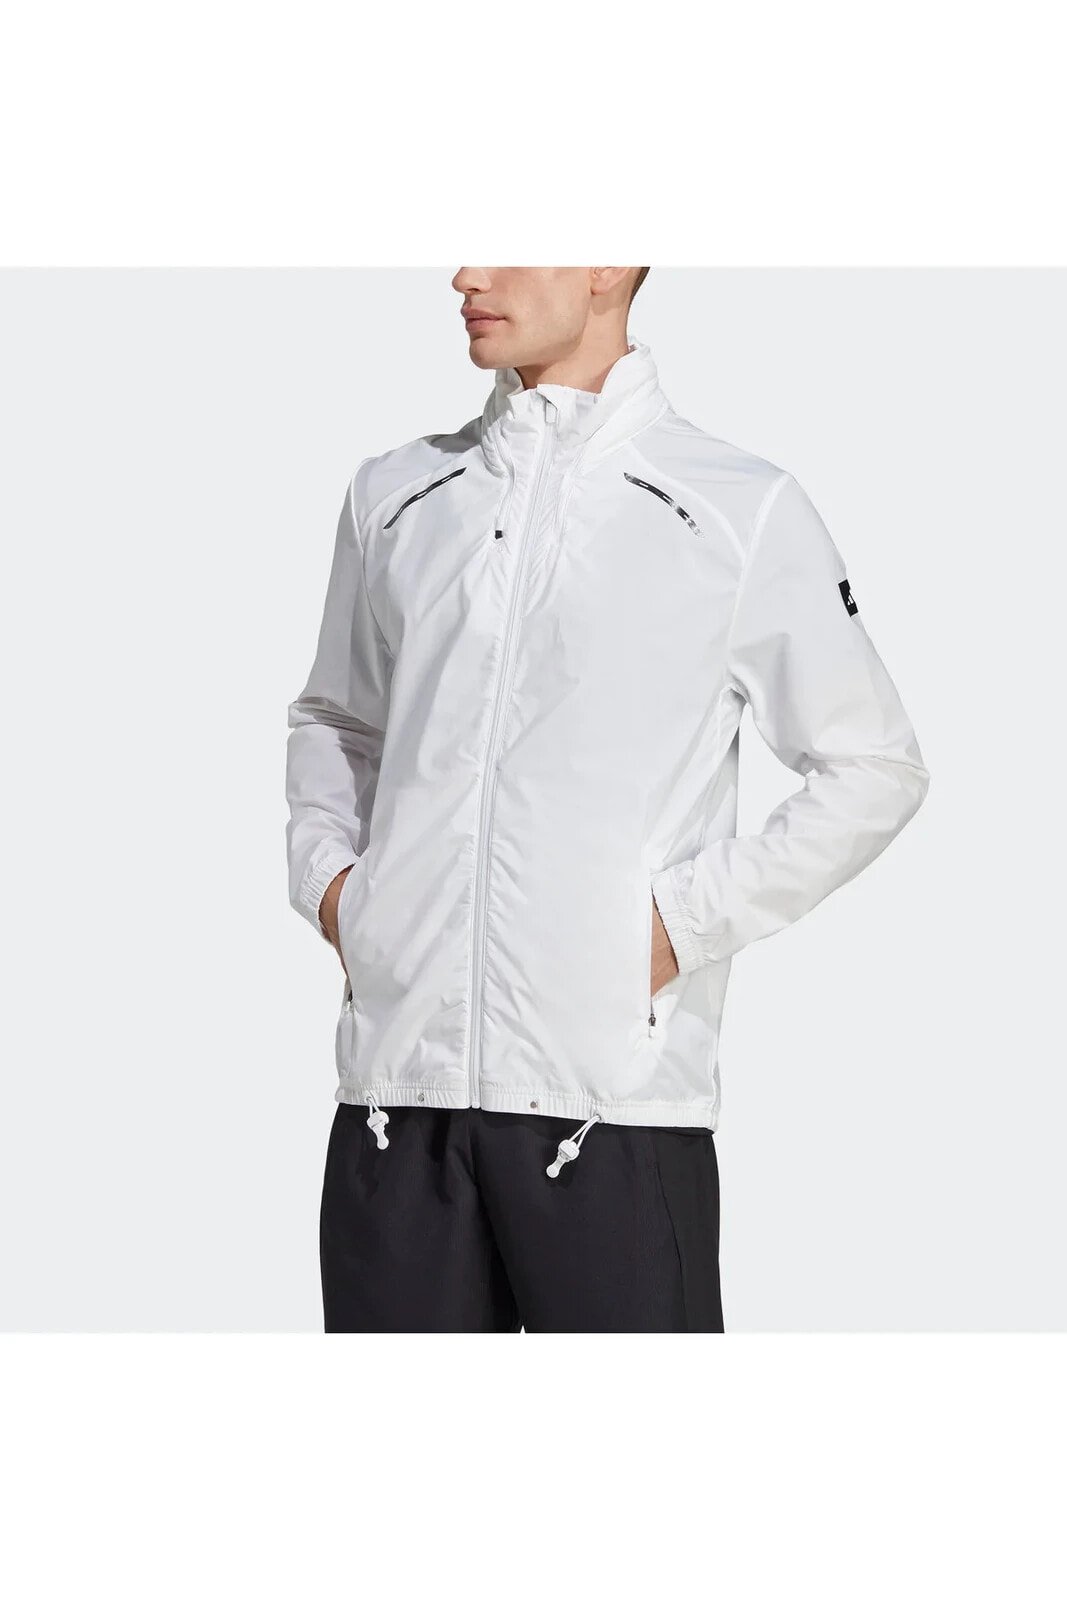 Boa Jacket Whıte Ceket HY5450